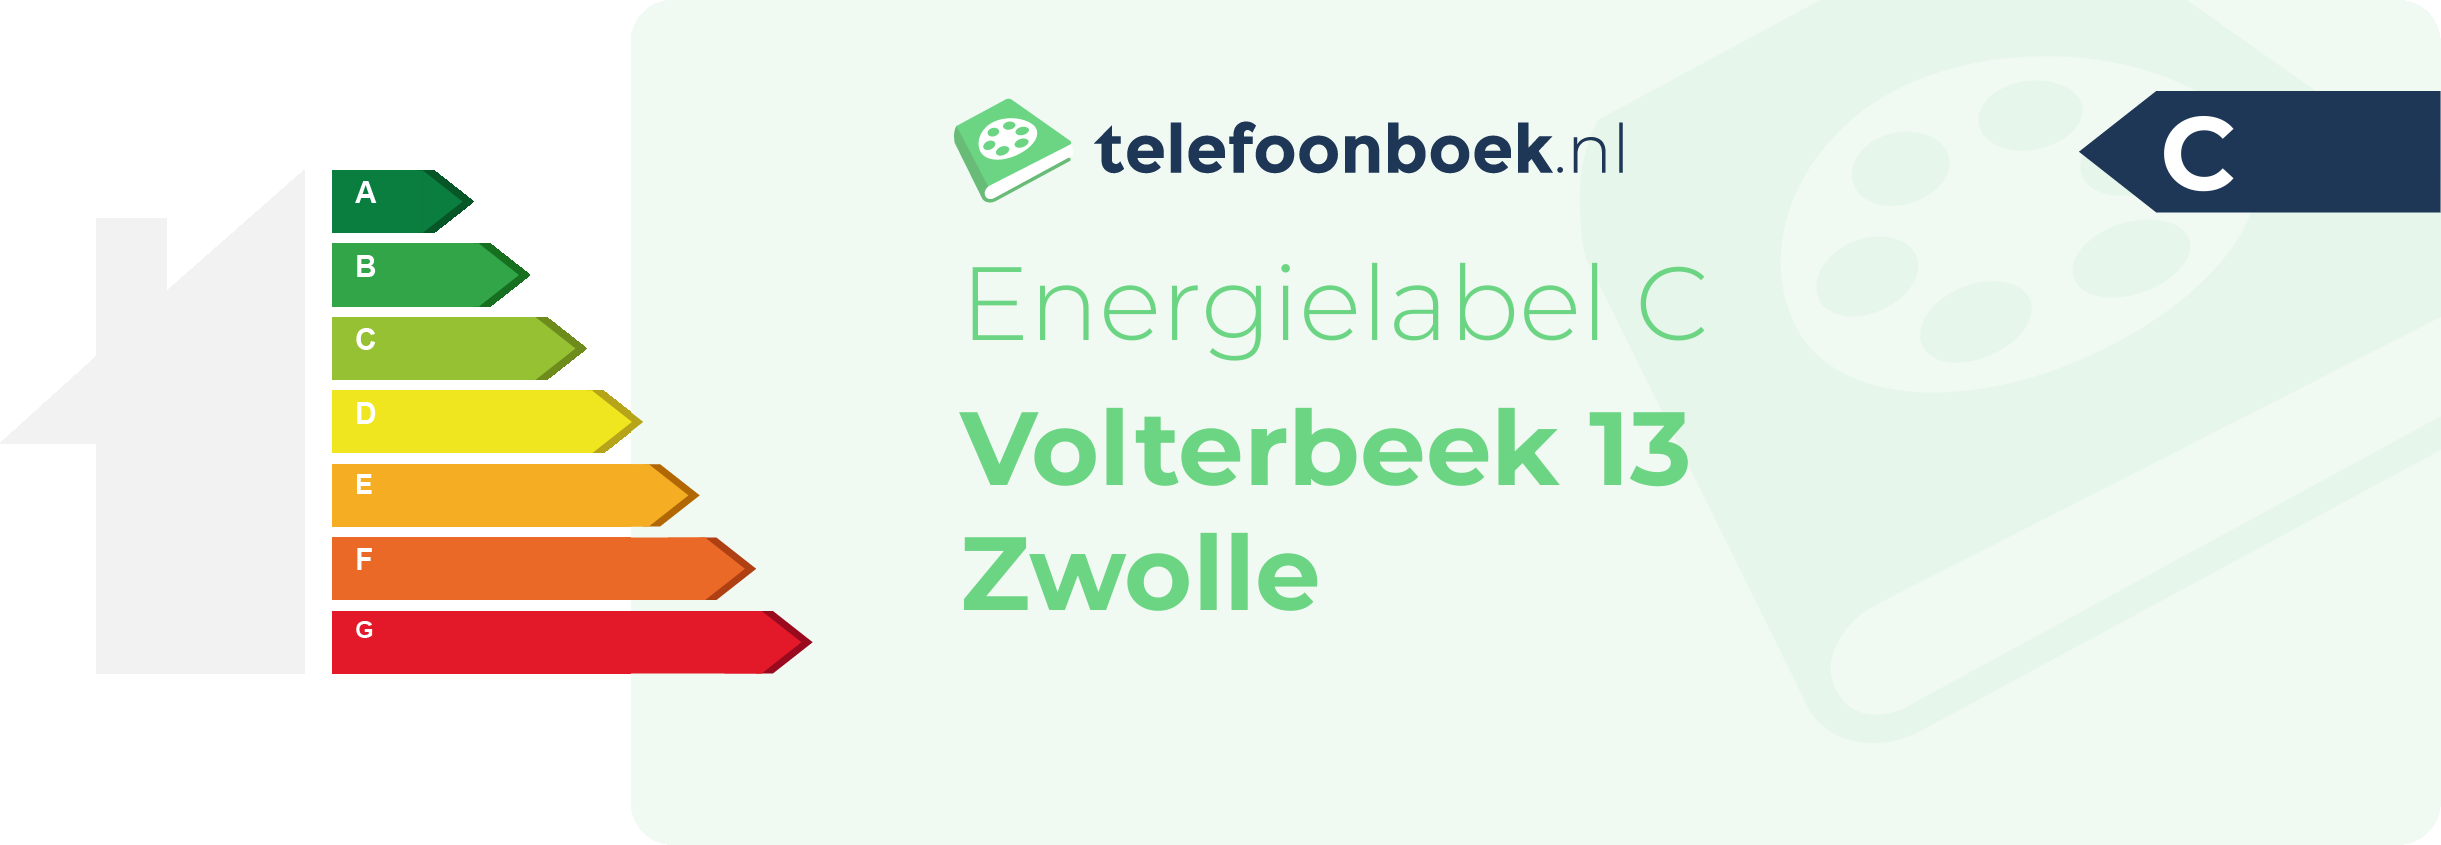 Energielabel Volterbeek 13 Zwolle